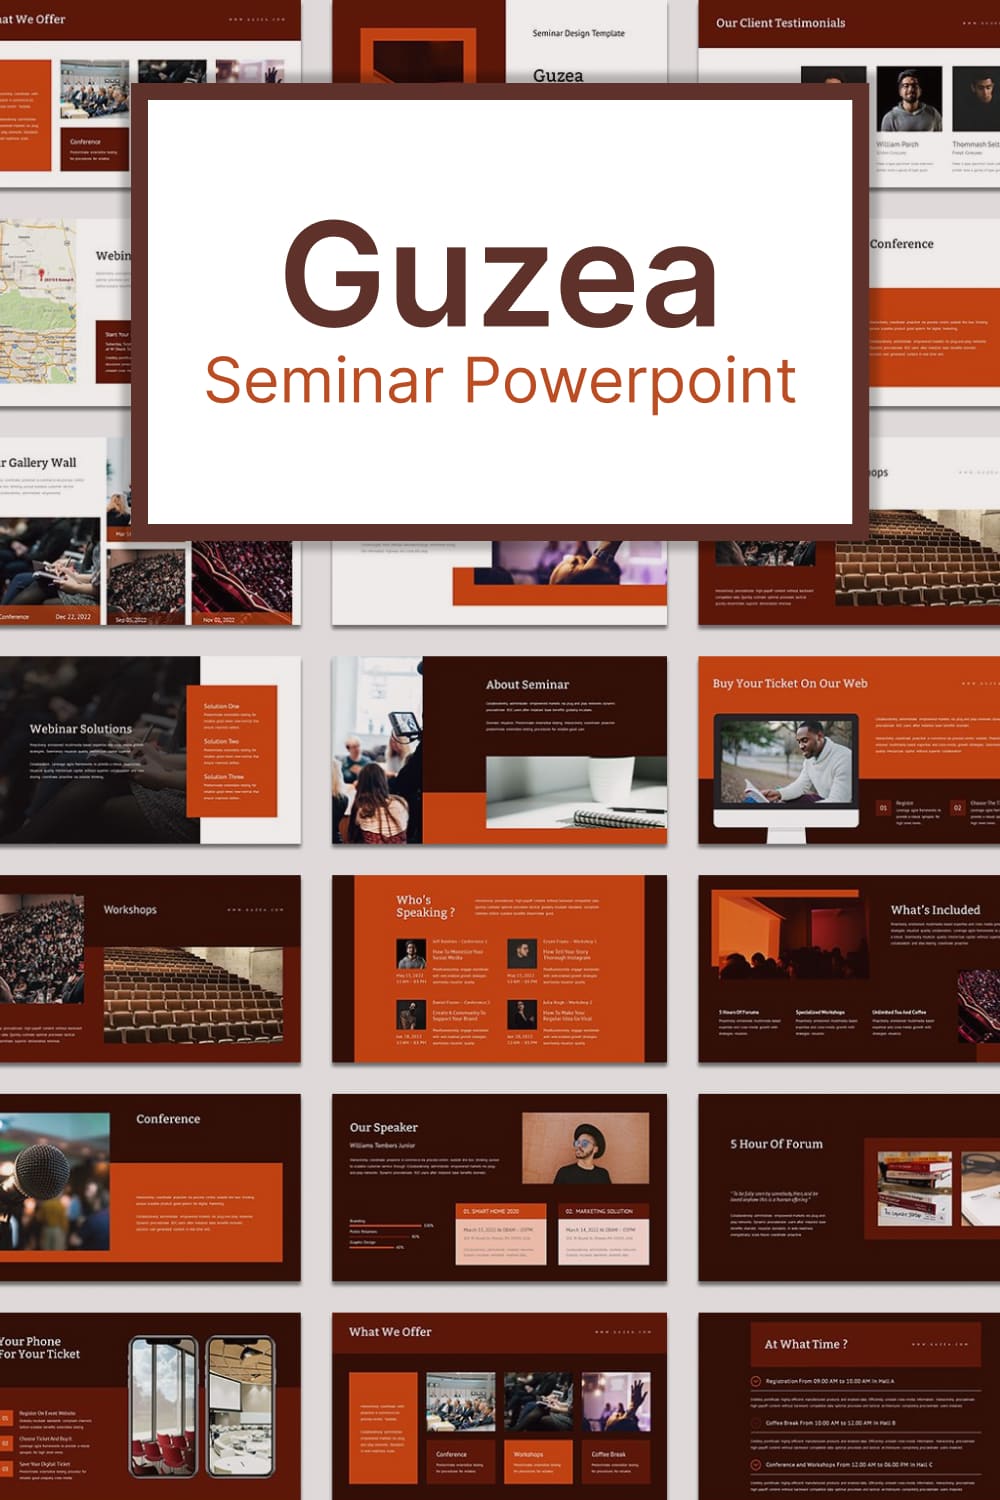 guzea seminar powerpoint 03